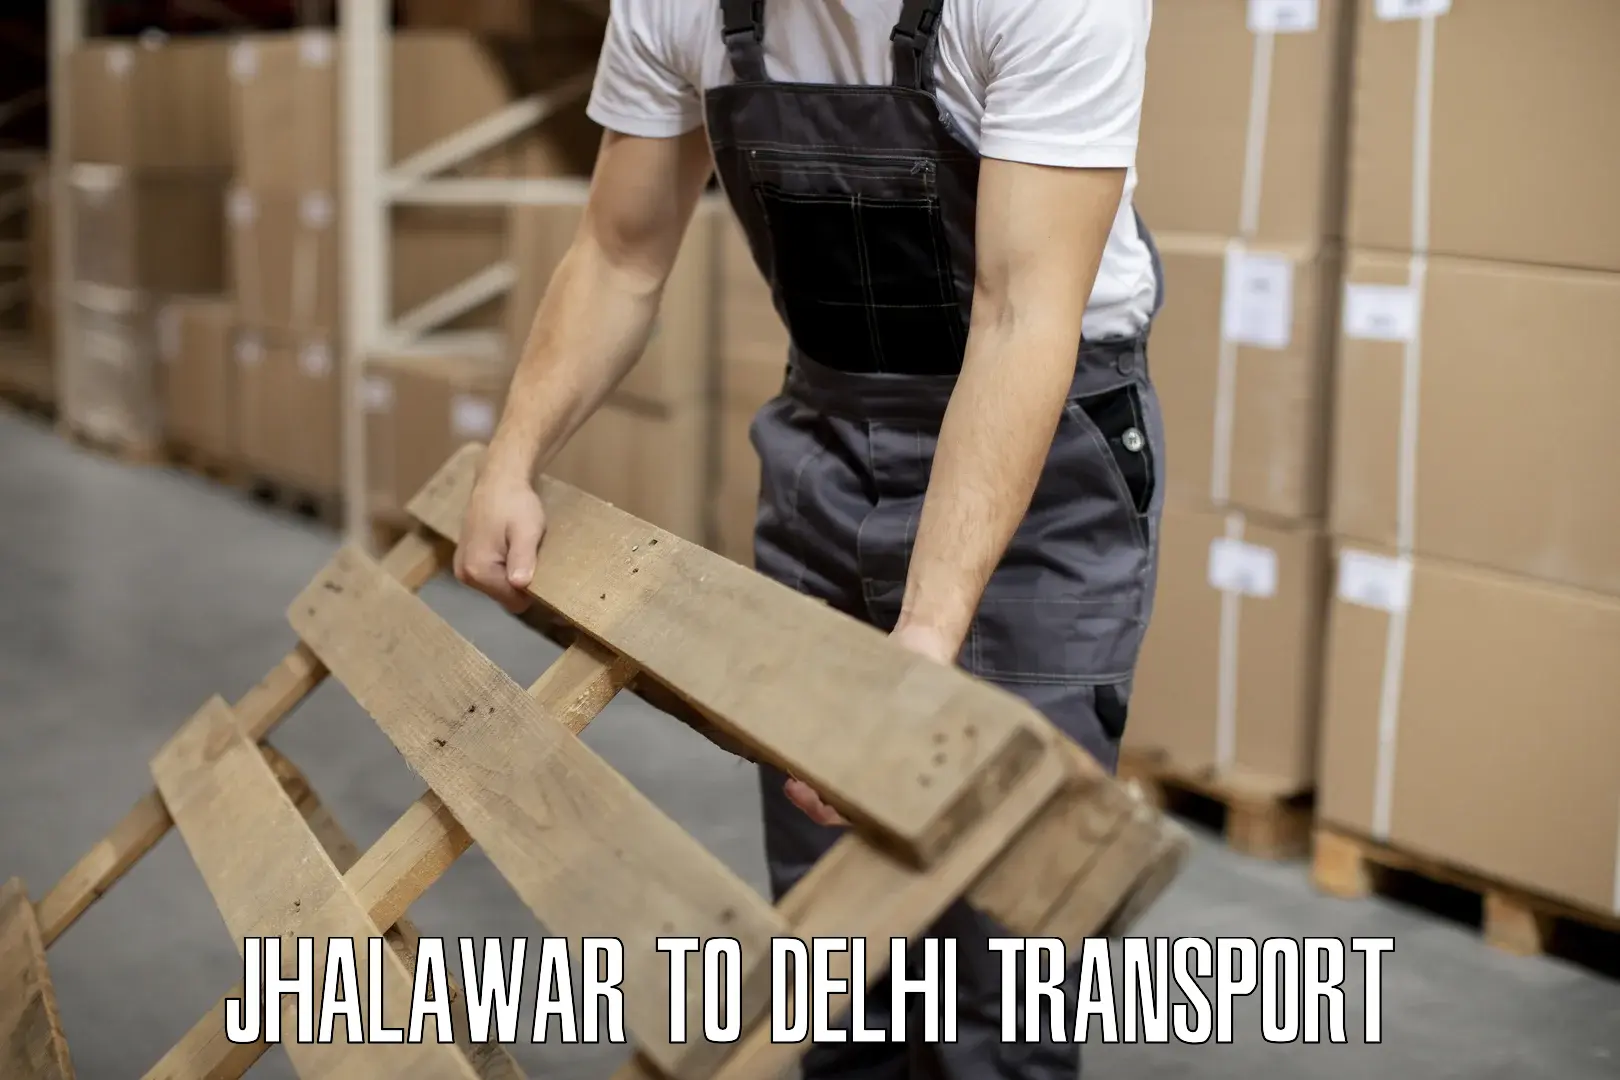 Transportation solution services Jhalawar to Delhi Technological University DTU